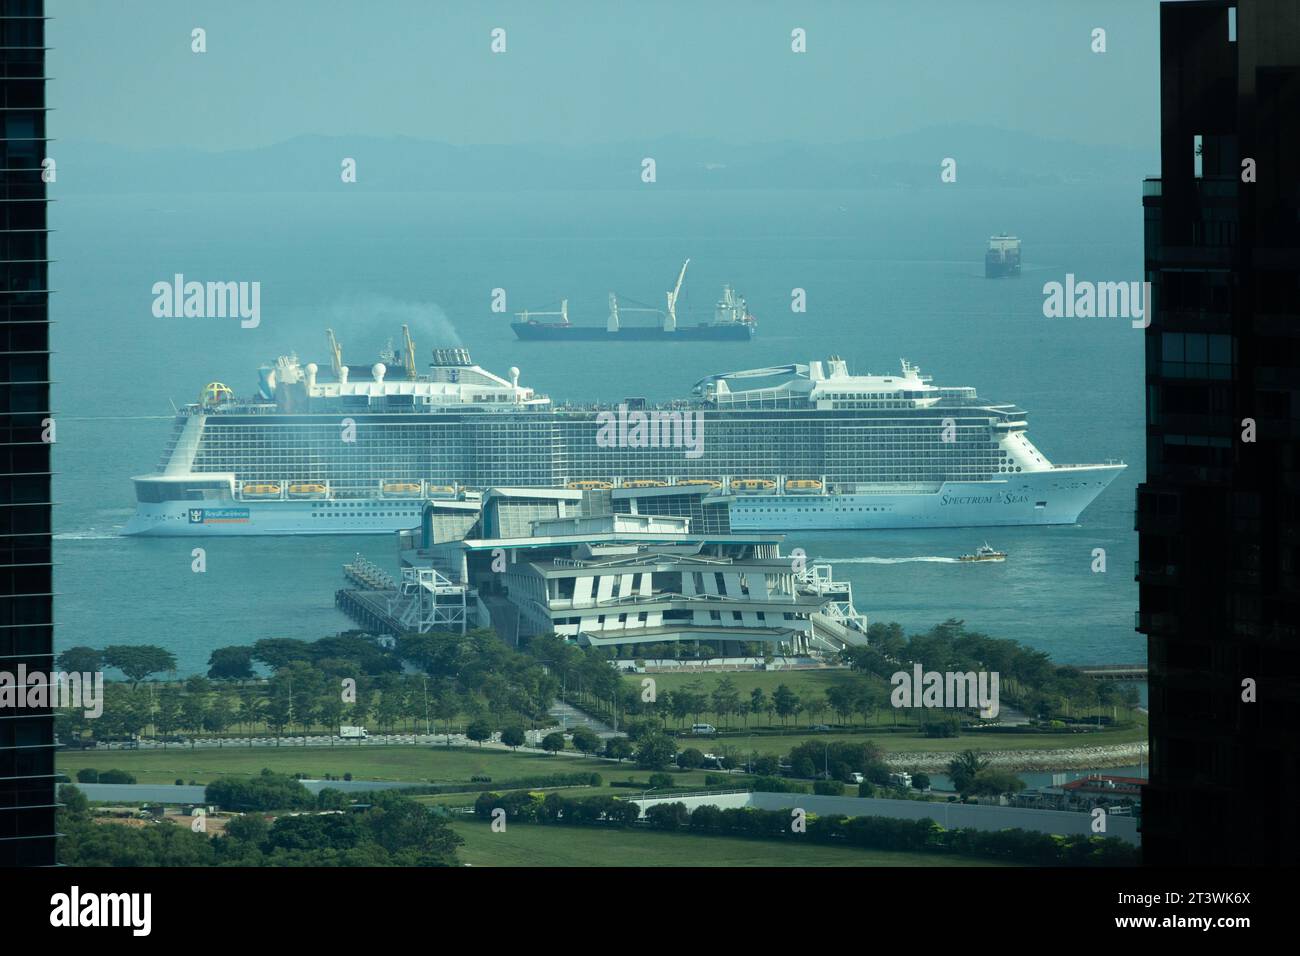 Attraverso la finestra colorata dall'alto punto panoramico, una nave da crociera Royal Carribean sta lasciando il Marina Bay Cruise Centre sulle acque dello stretto di Singapore. Foto Stock